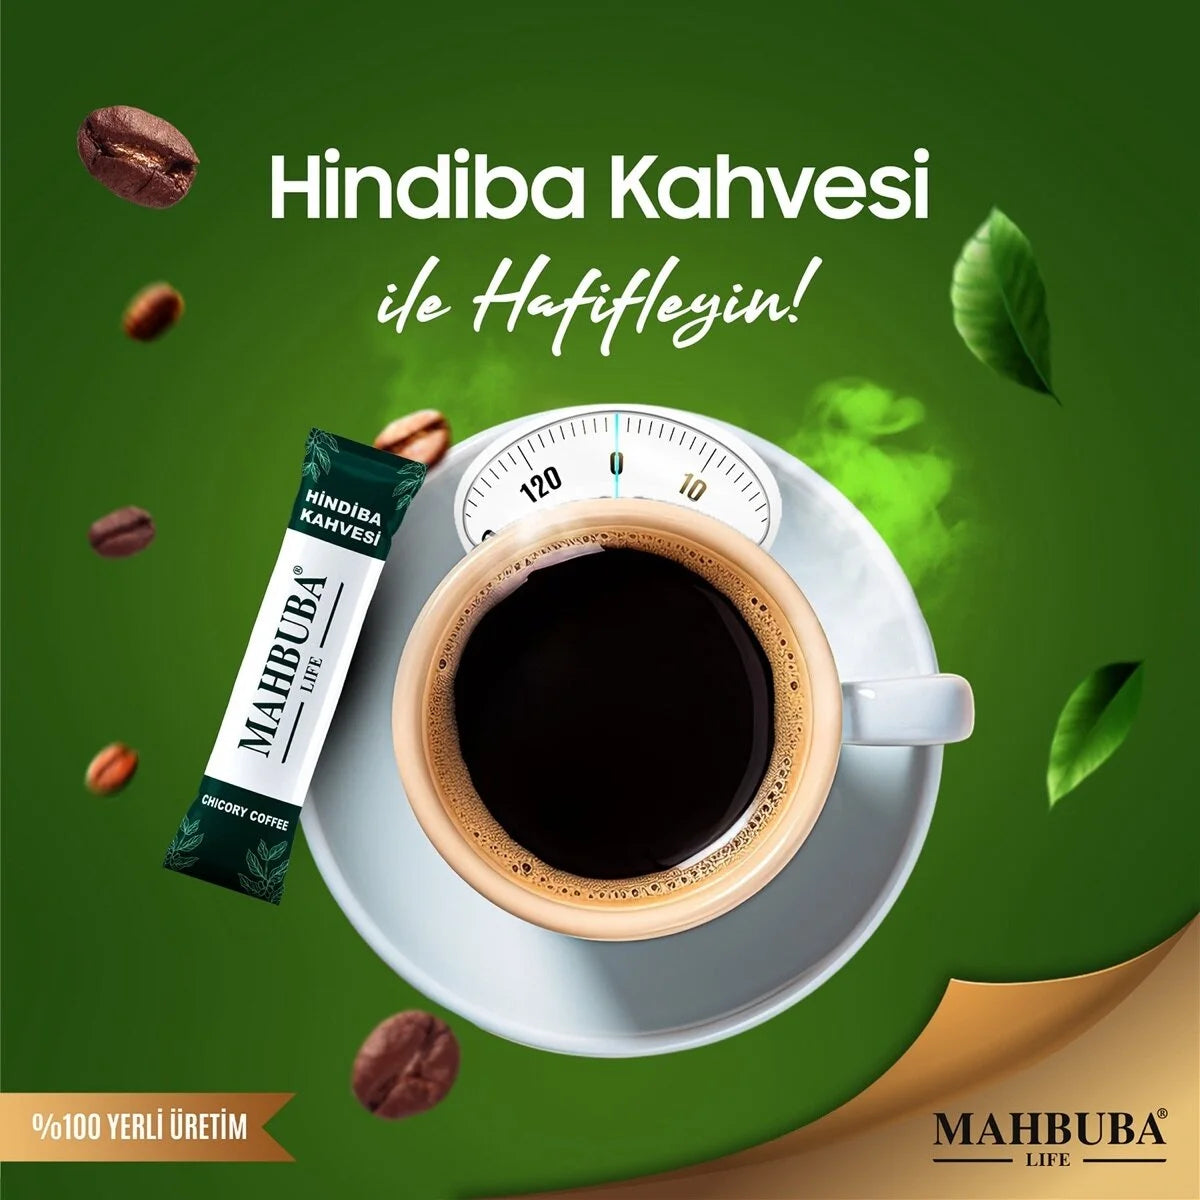 MAHBUBA قهوة الهندباء، مساعد في الحمية التخلص من السموم لفقدان الوزن والتخلص من السموم وحرق الدهون 